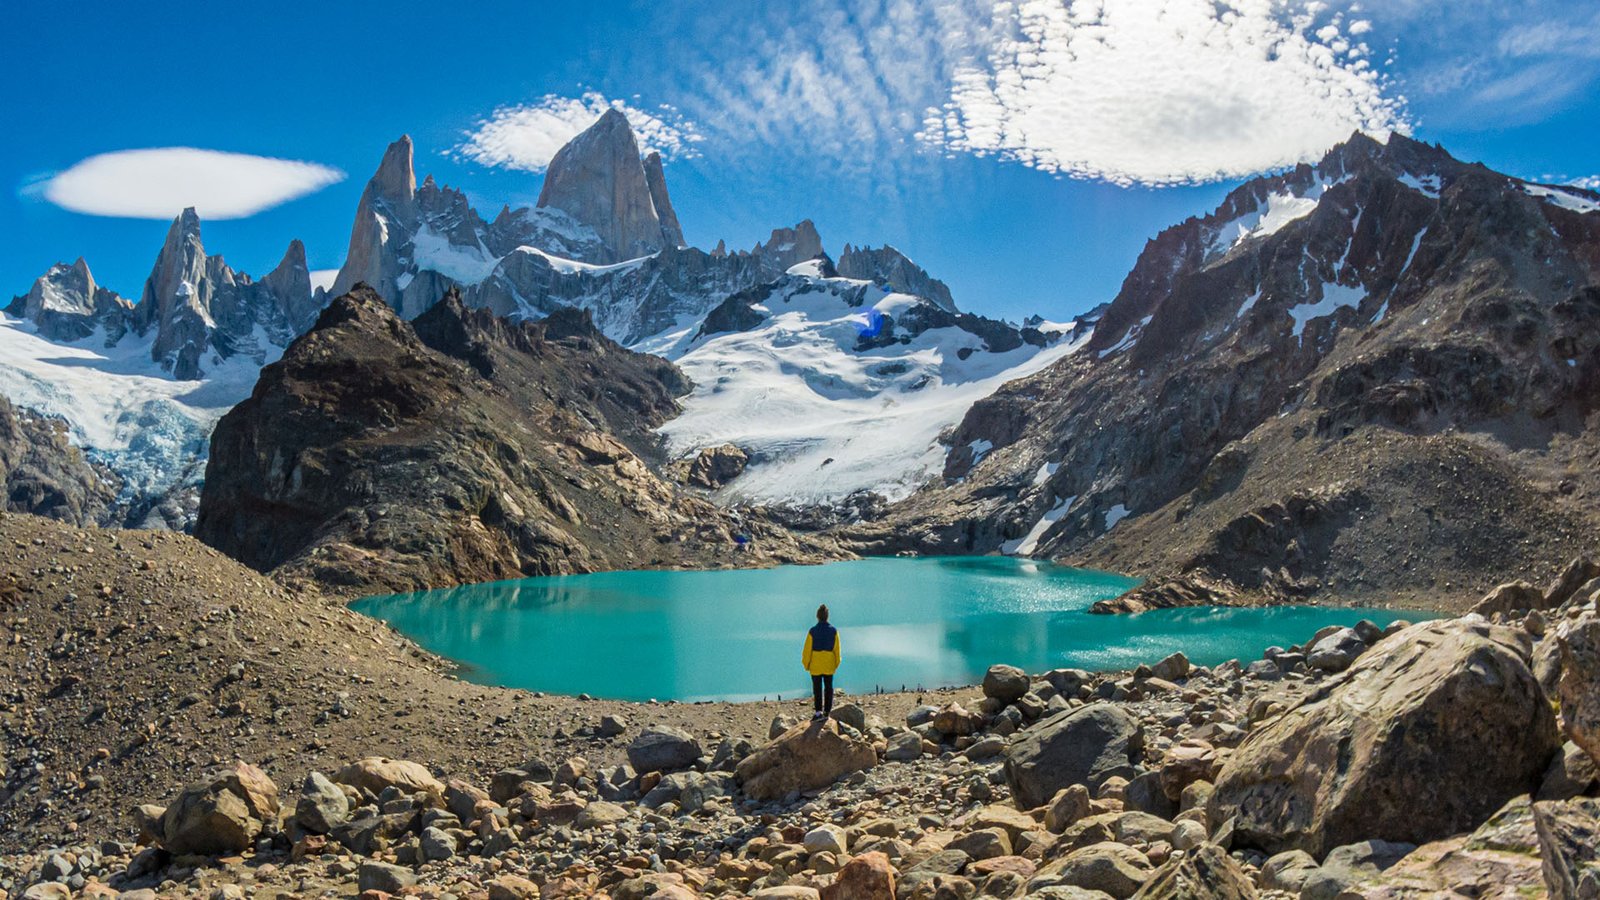 El Chaltén: Treasure of Patagonia